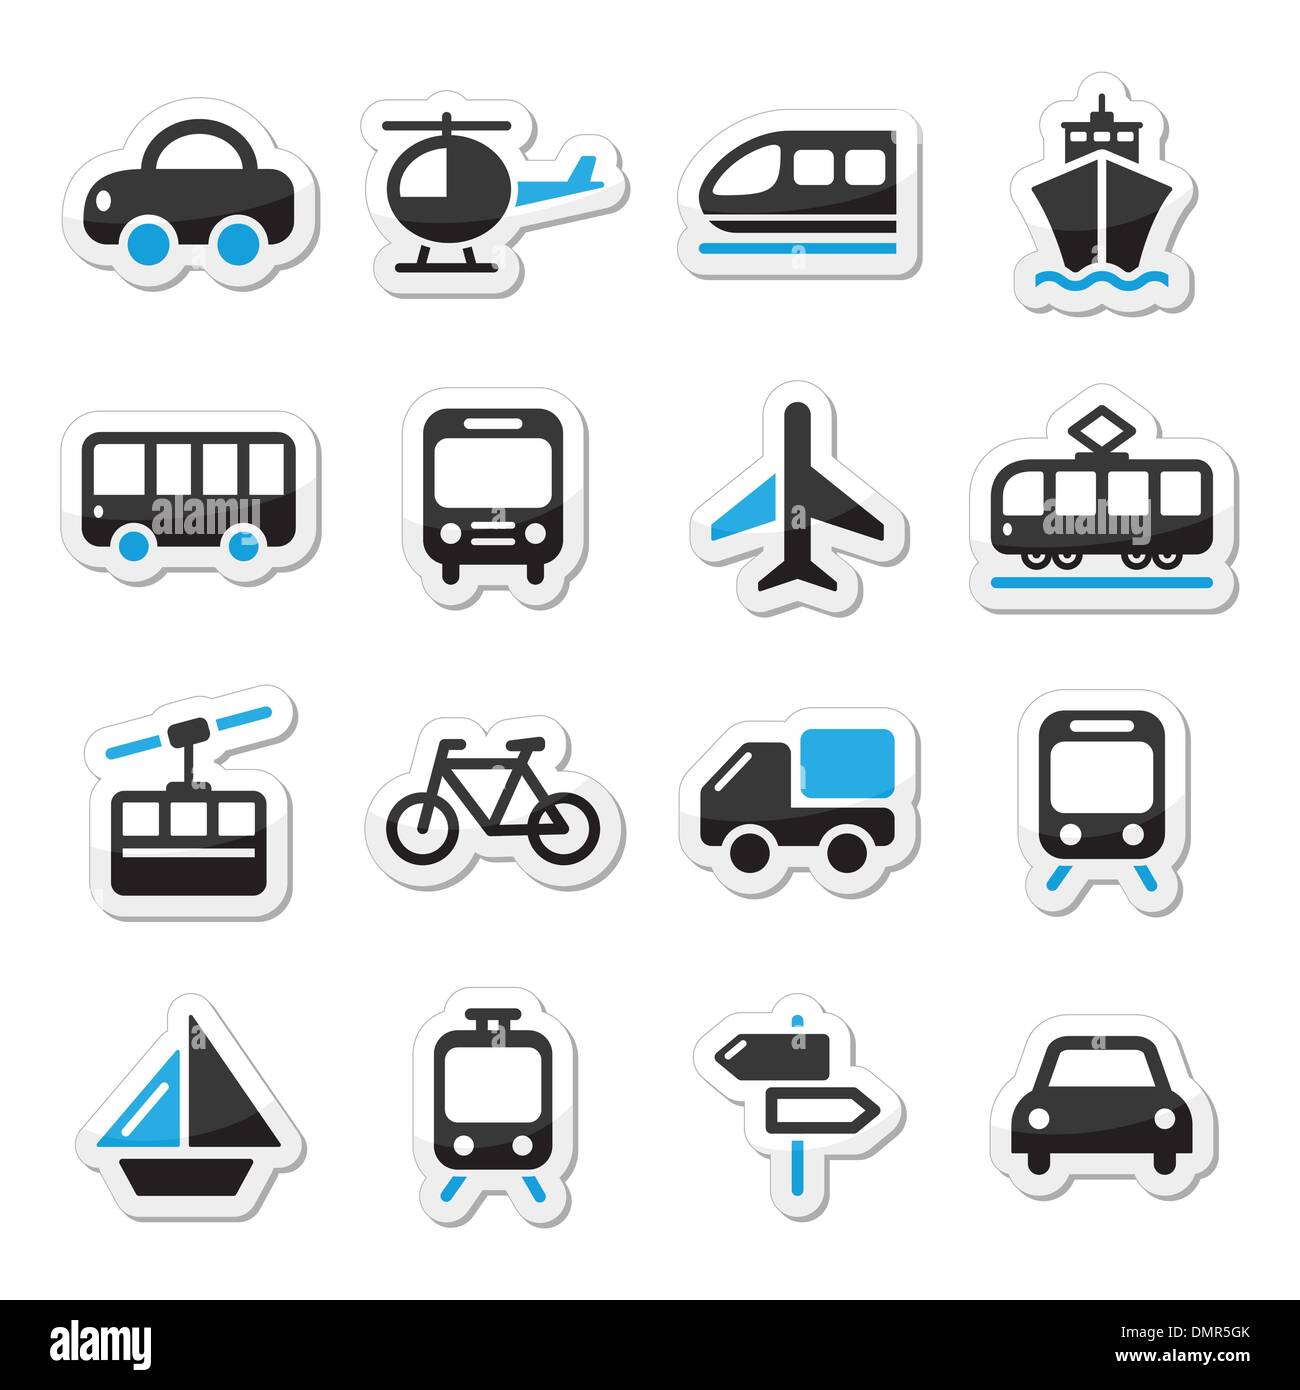 Transport, Reise-Vektor Icons Set Isoalated auf weiß Stock Vektor